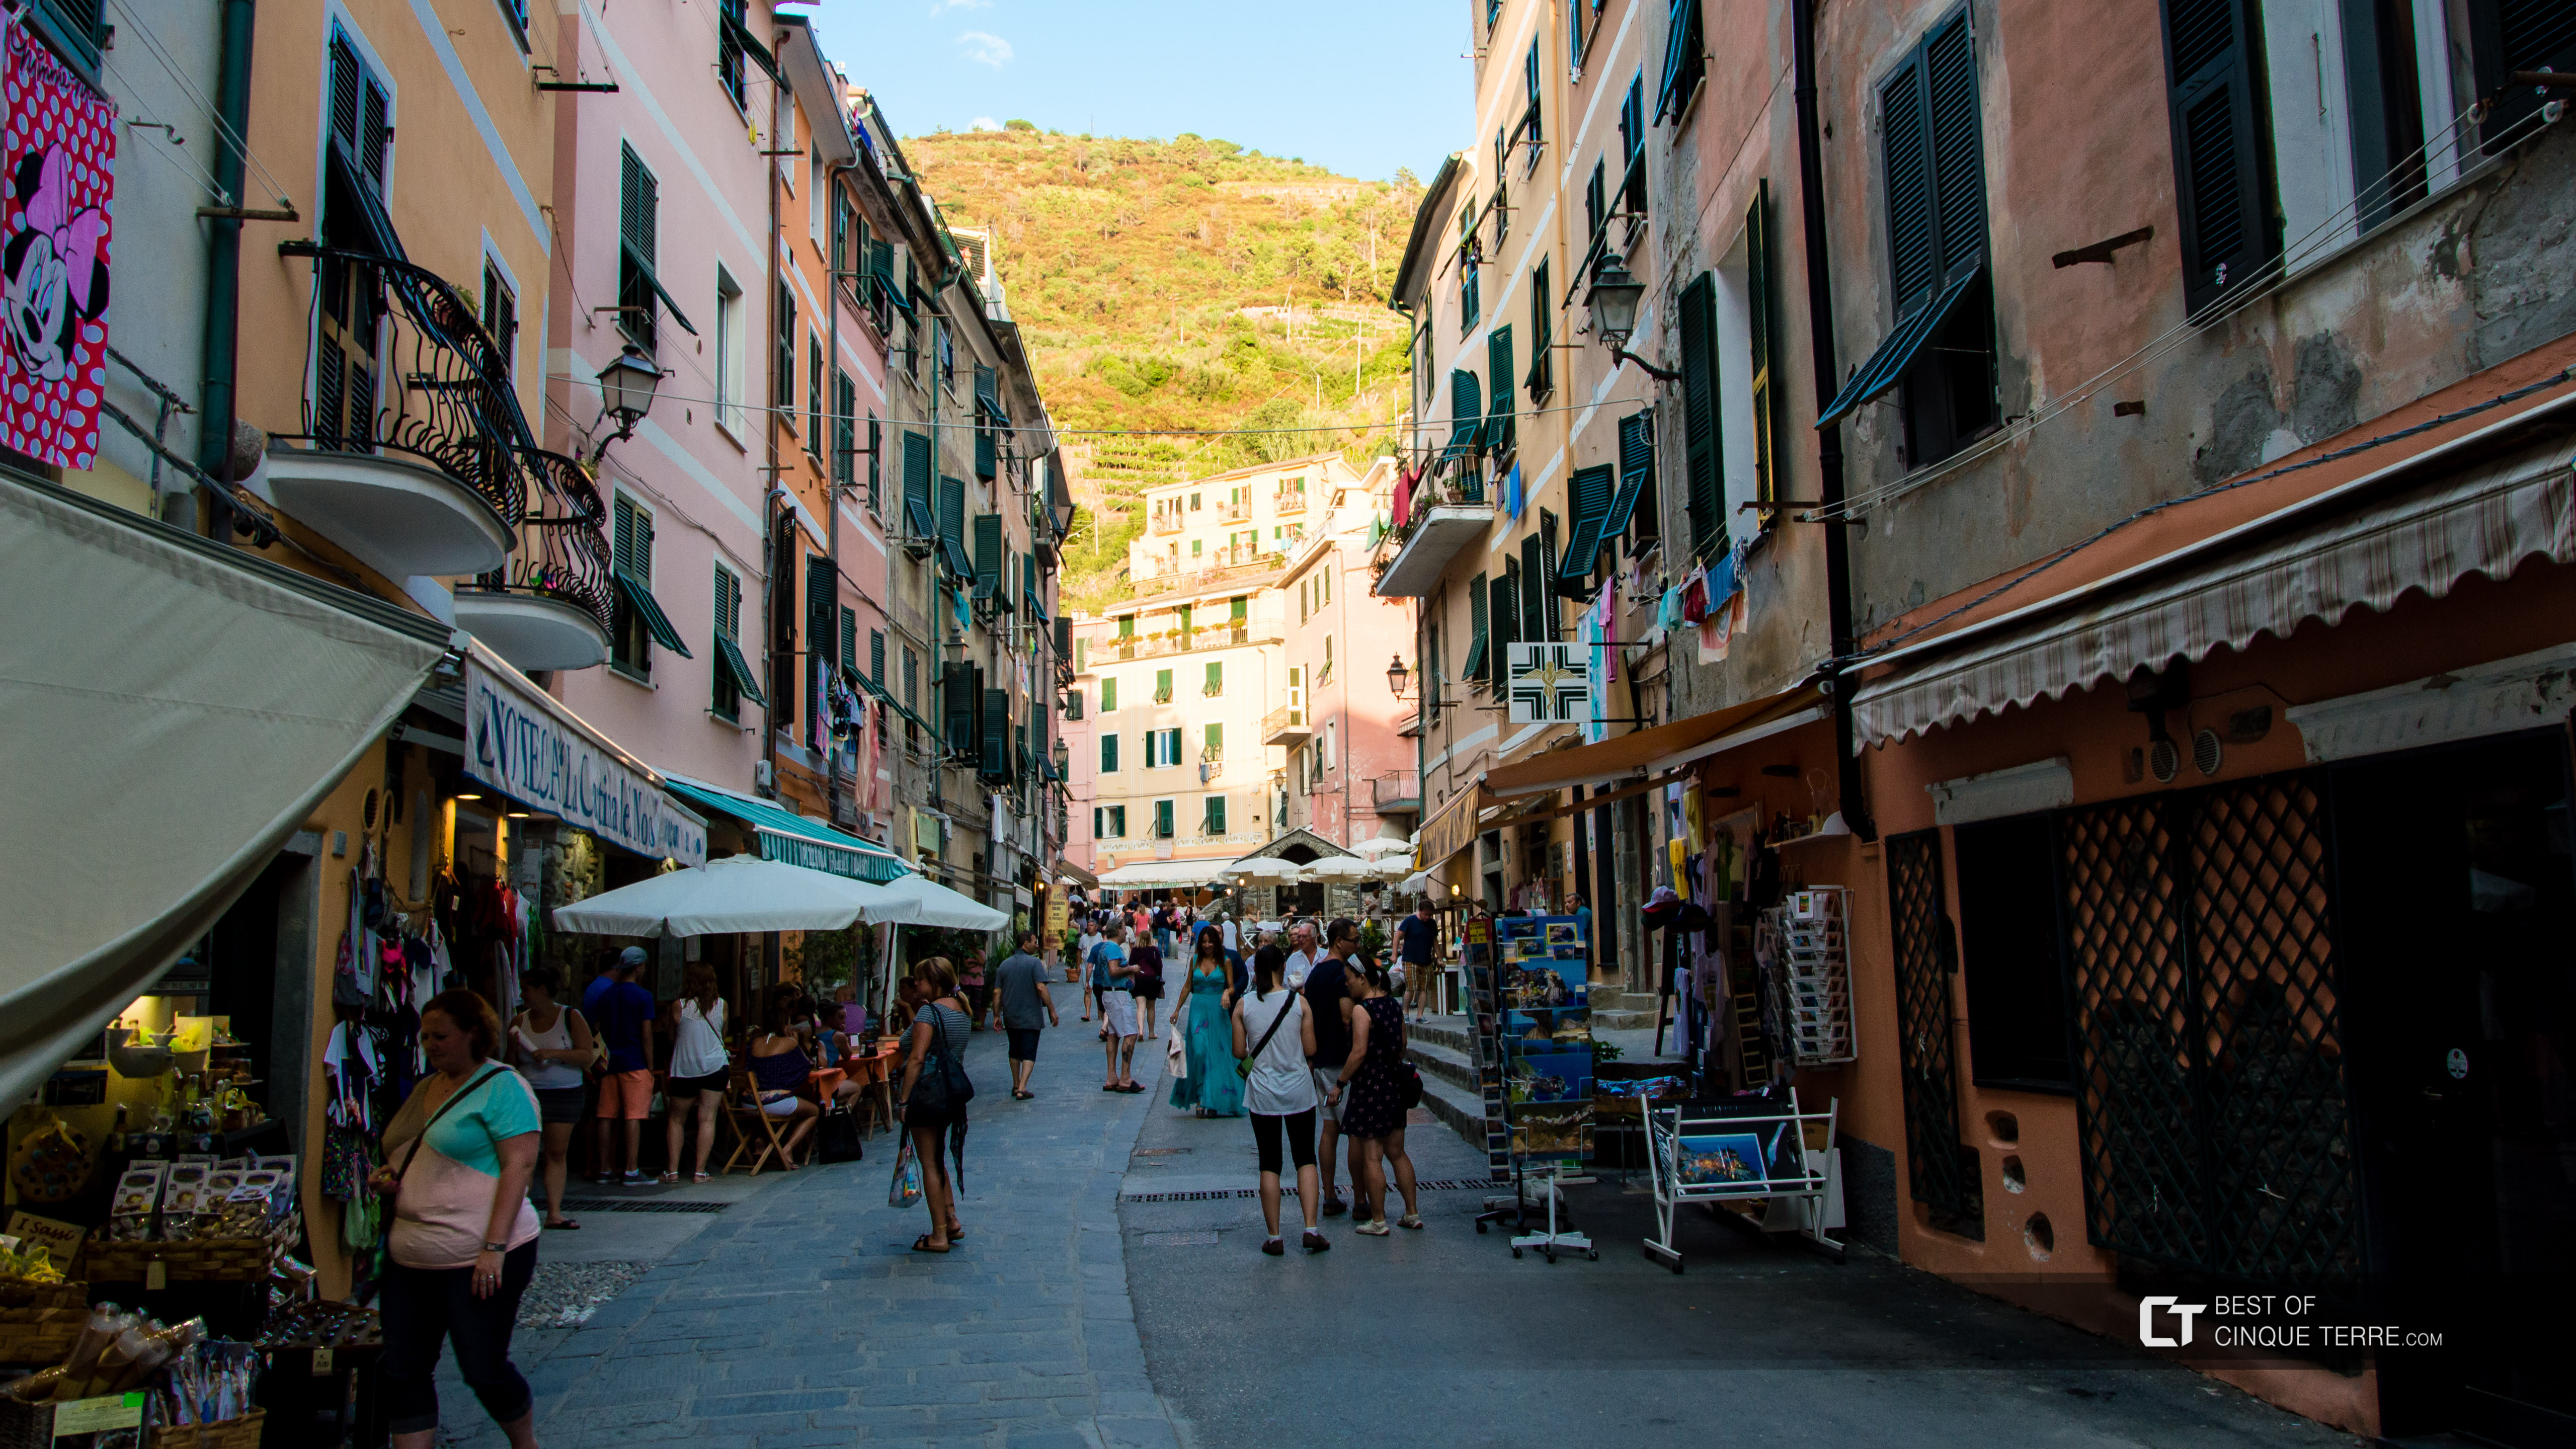 Passeggiata lungo la via principale, Vernazza, Cinque Terre, Italia